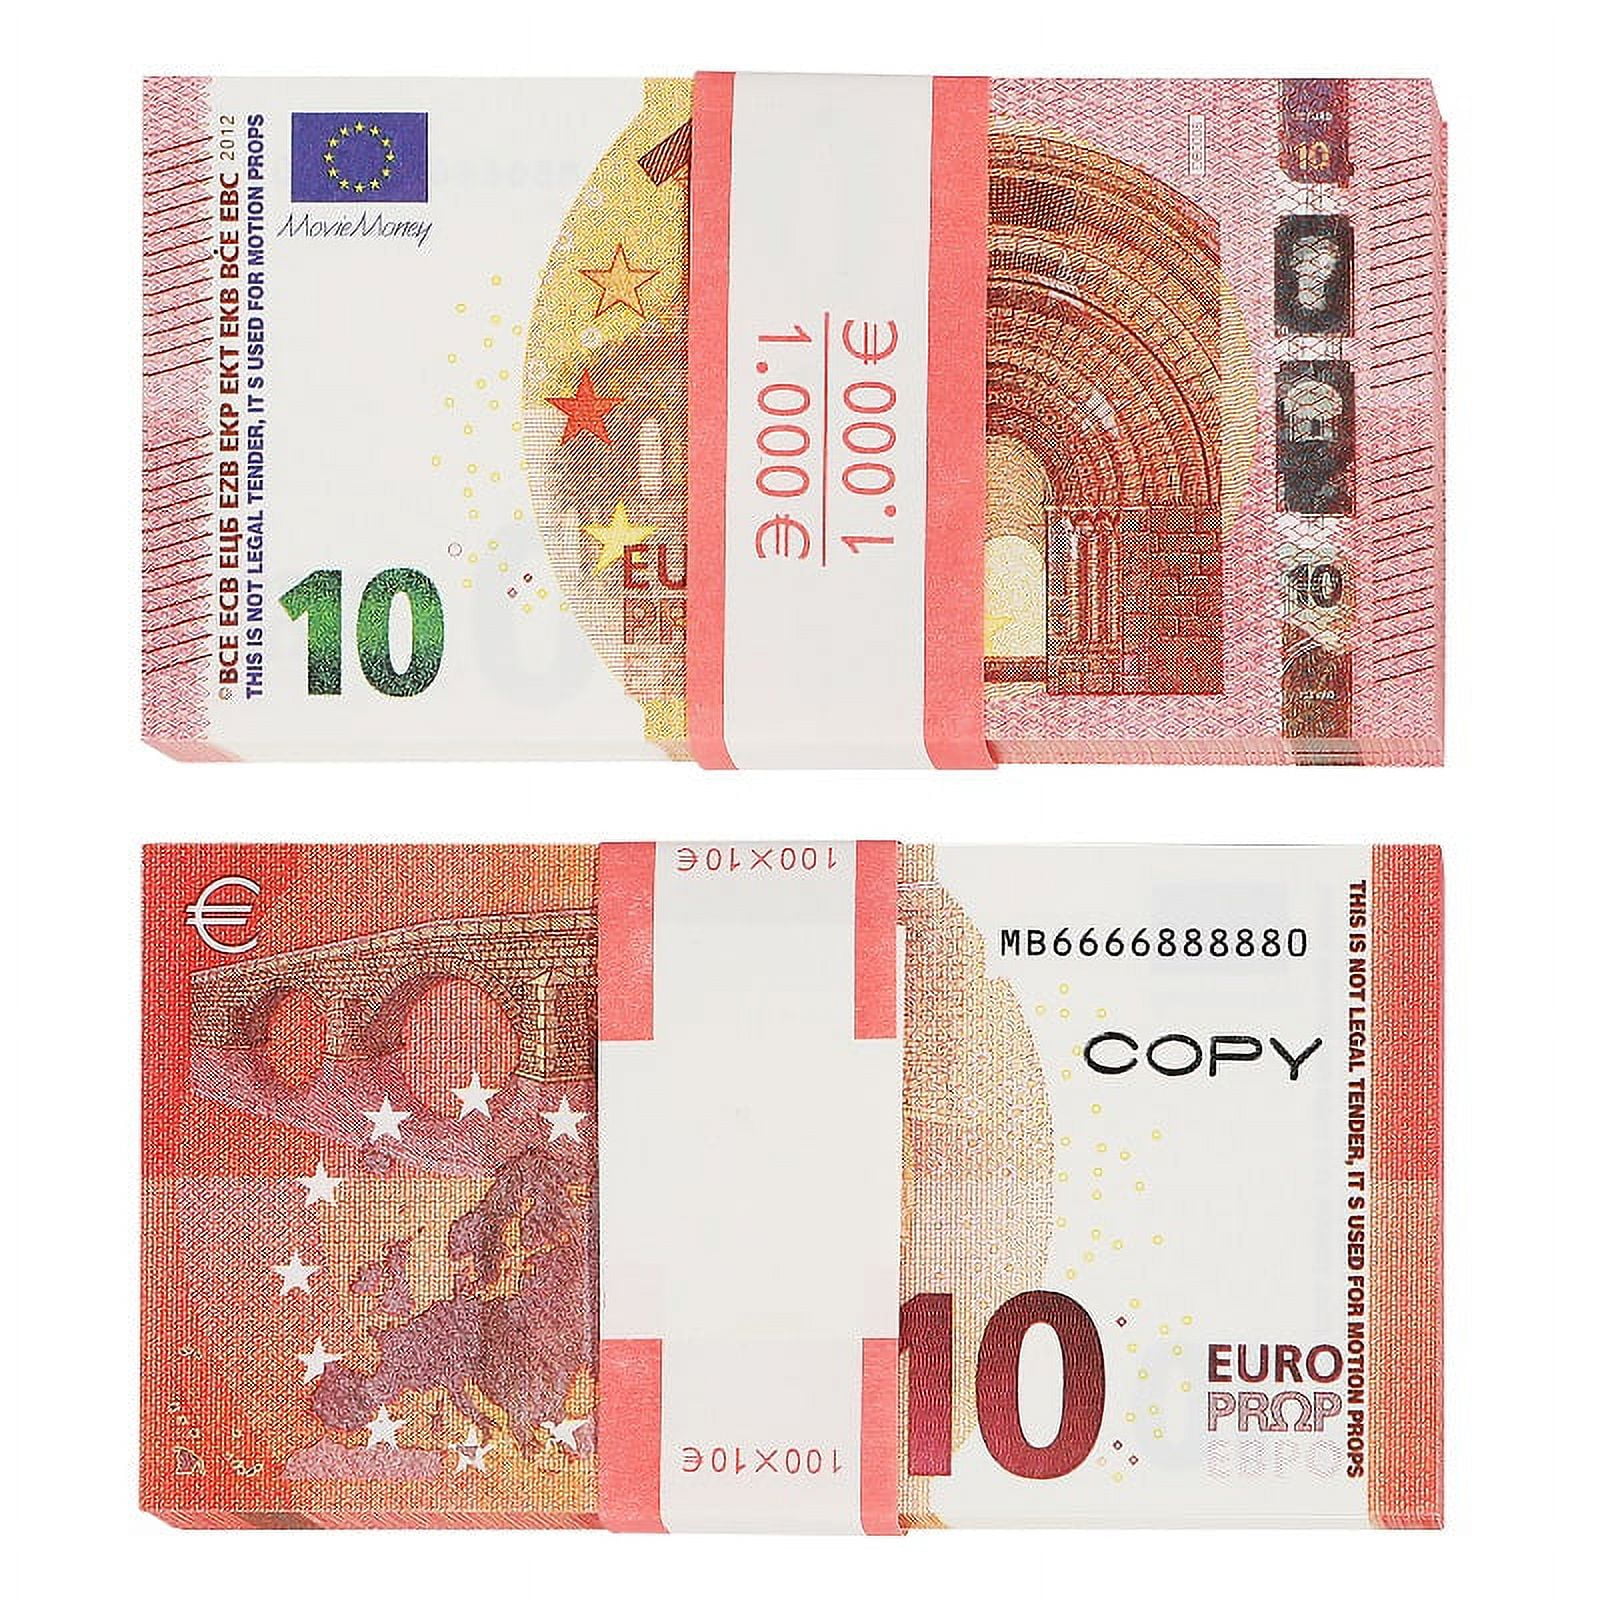 Euro Banknotes Paper Play Money Movie Props – Coin Souvenir